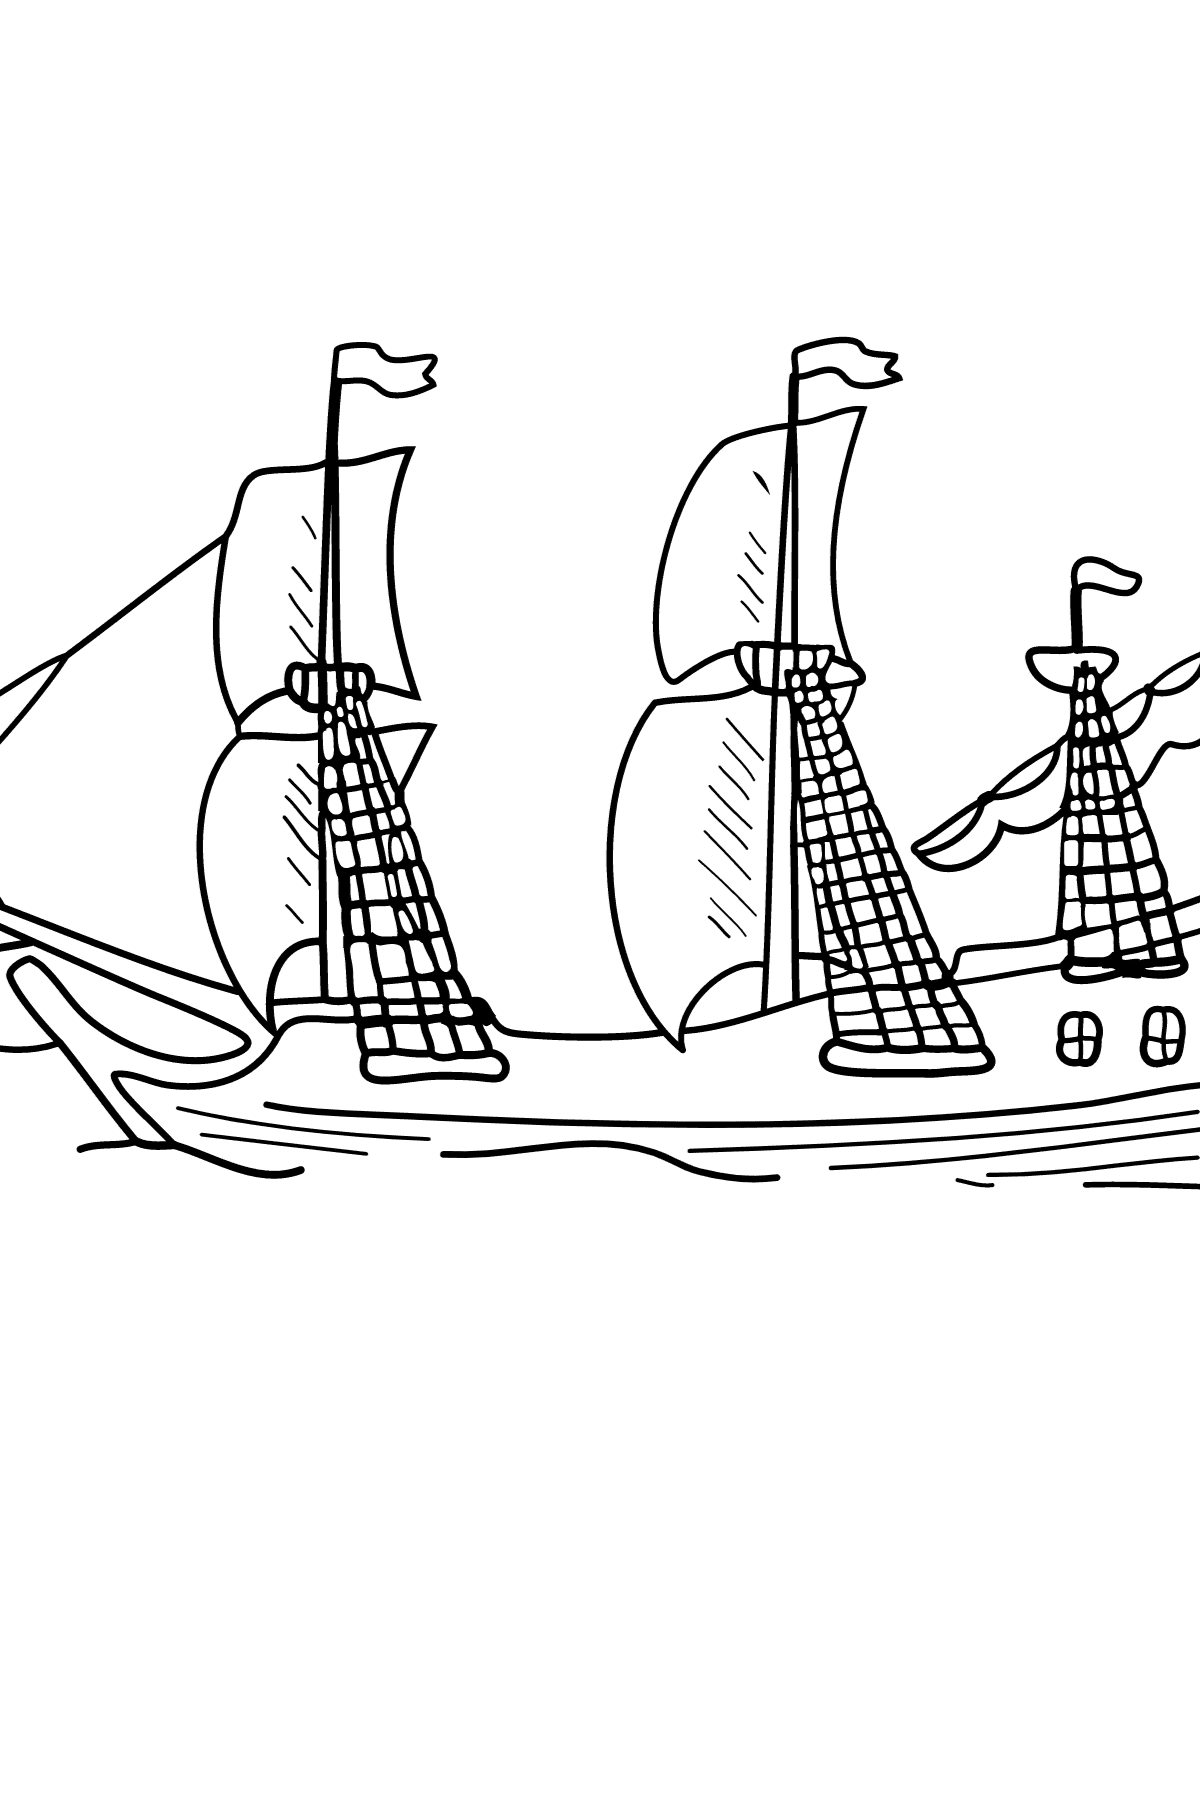 Kolorowanka - Mały trójmasztowy okręt - Xebec - Kolorowanki dla dzieci